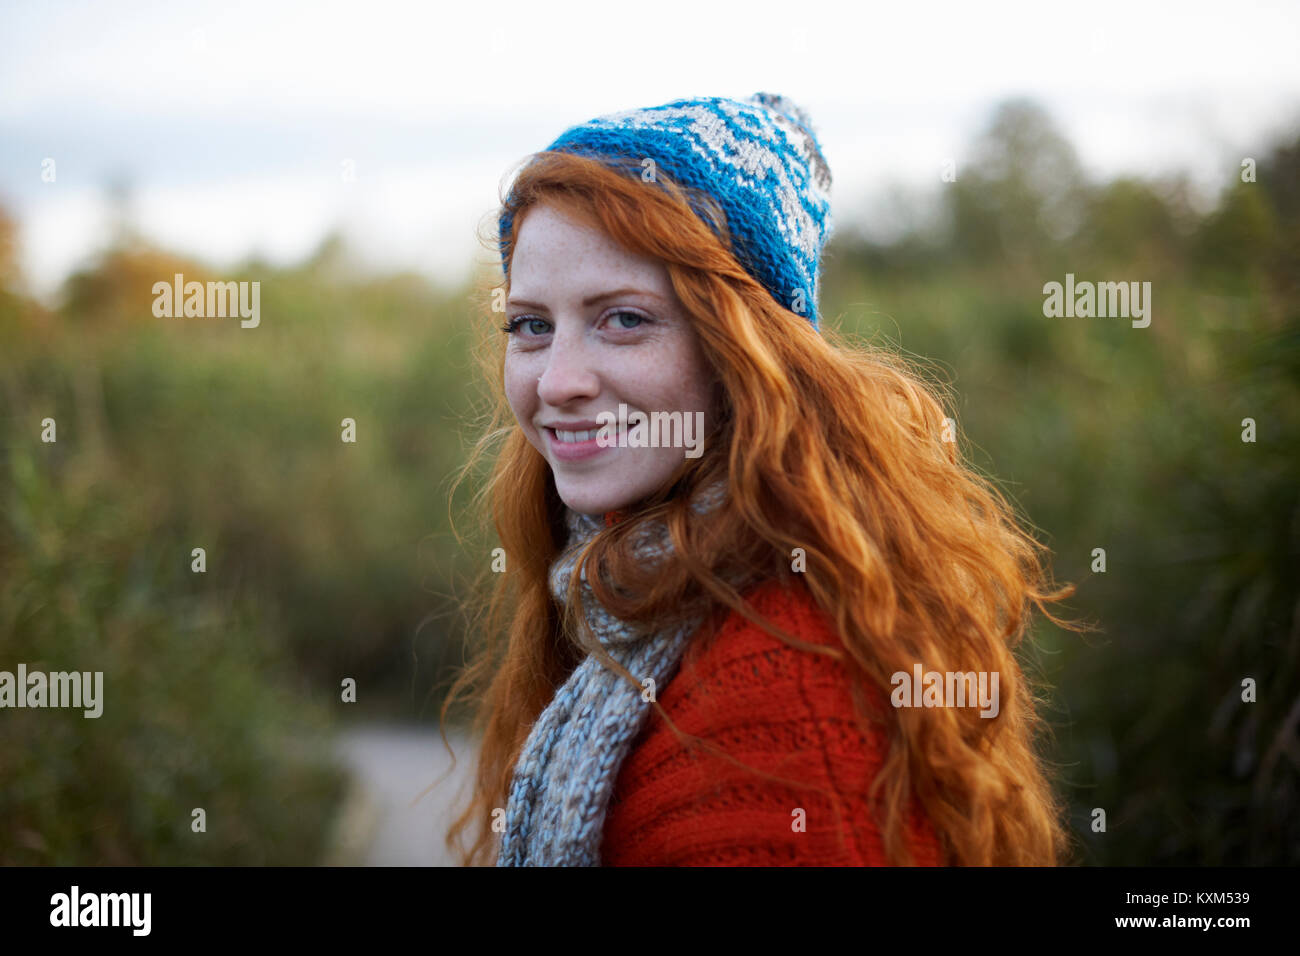 Portrait de femme aux cheveux rouges à la recherche de smiling Banque D'Images